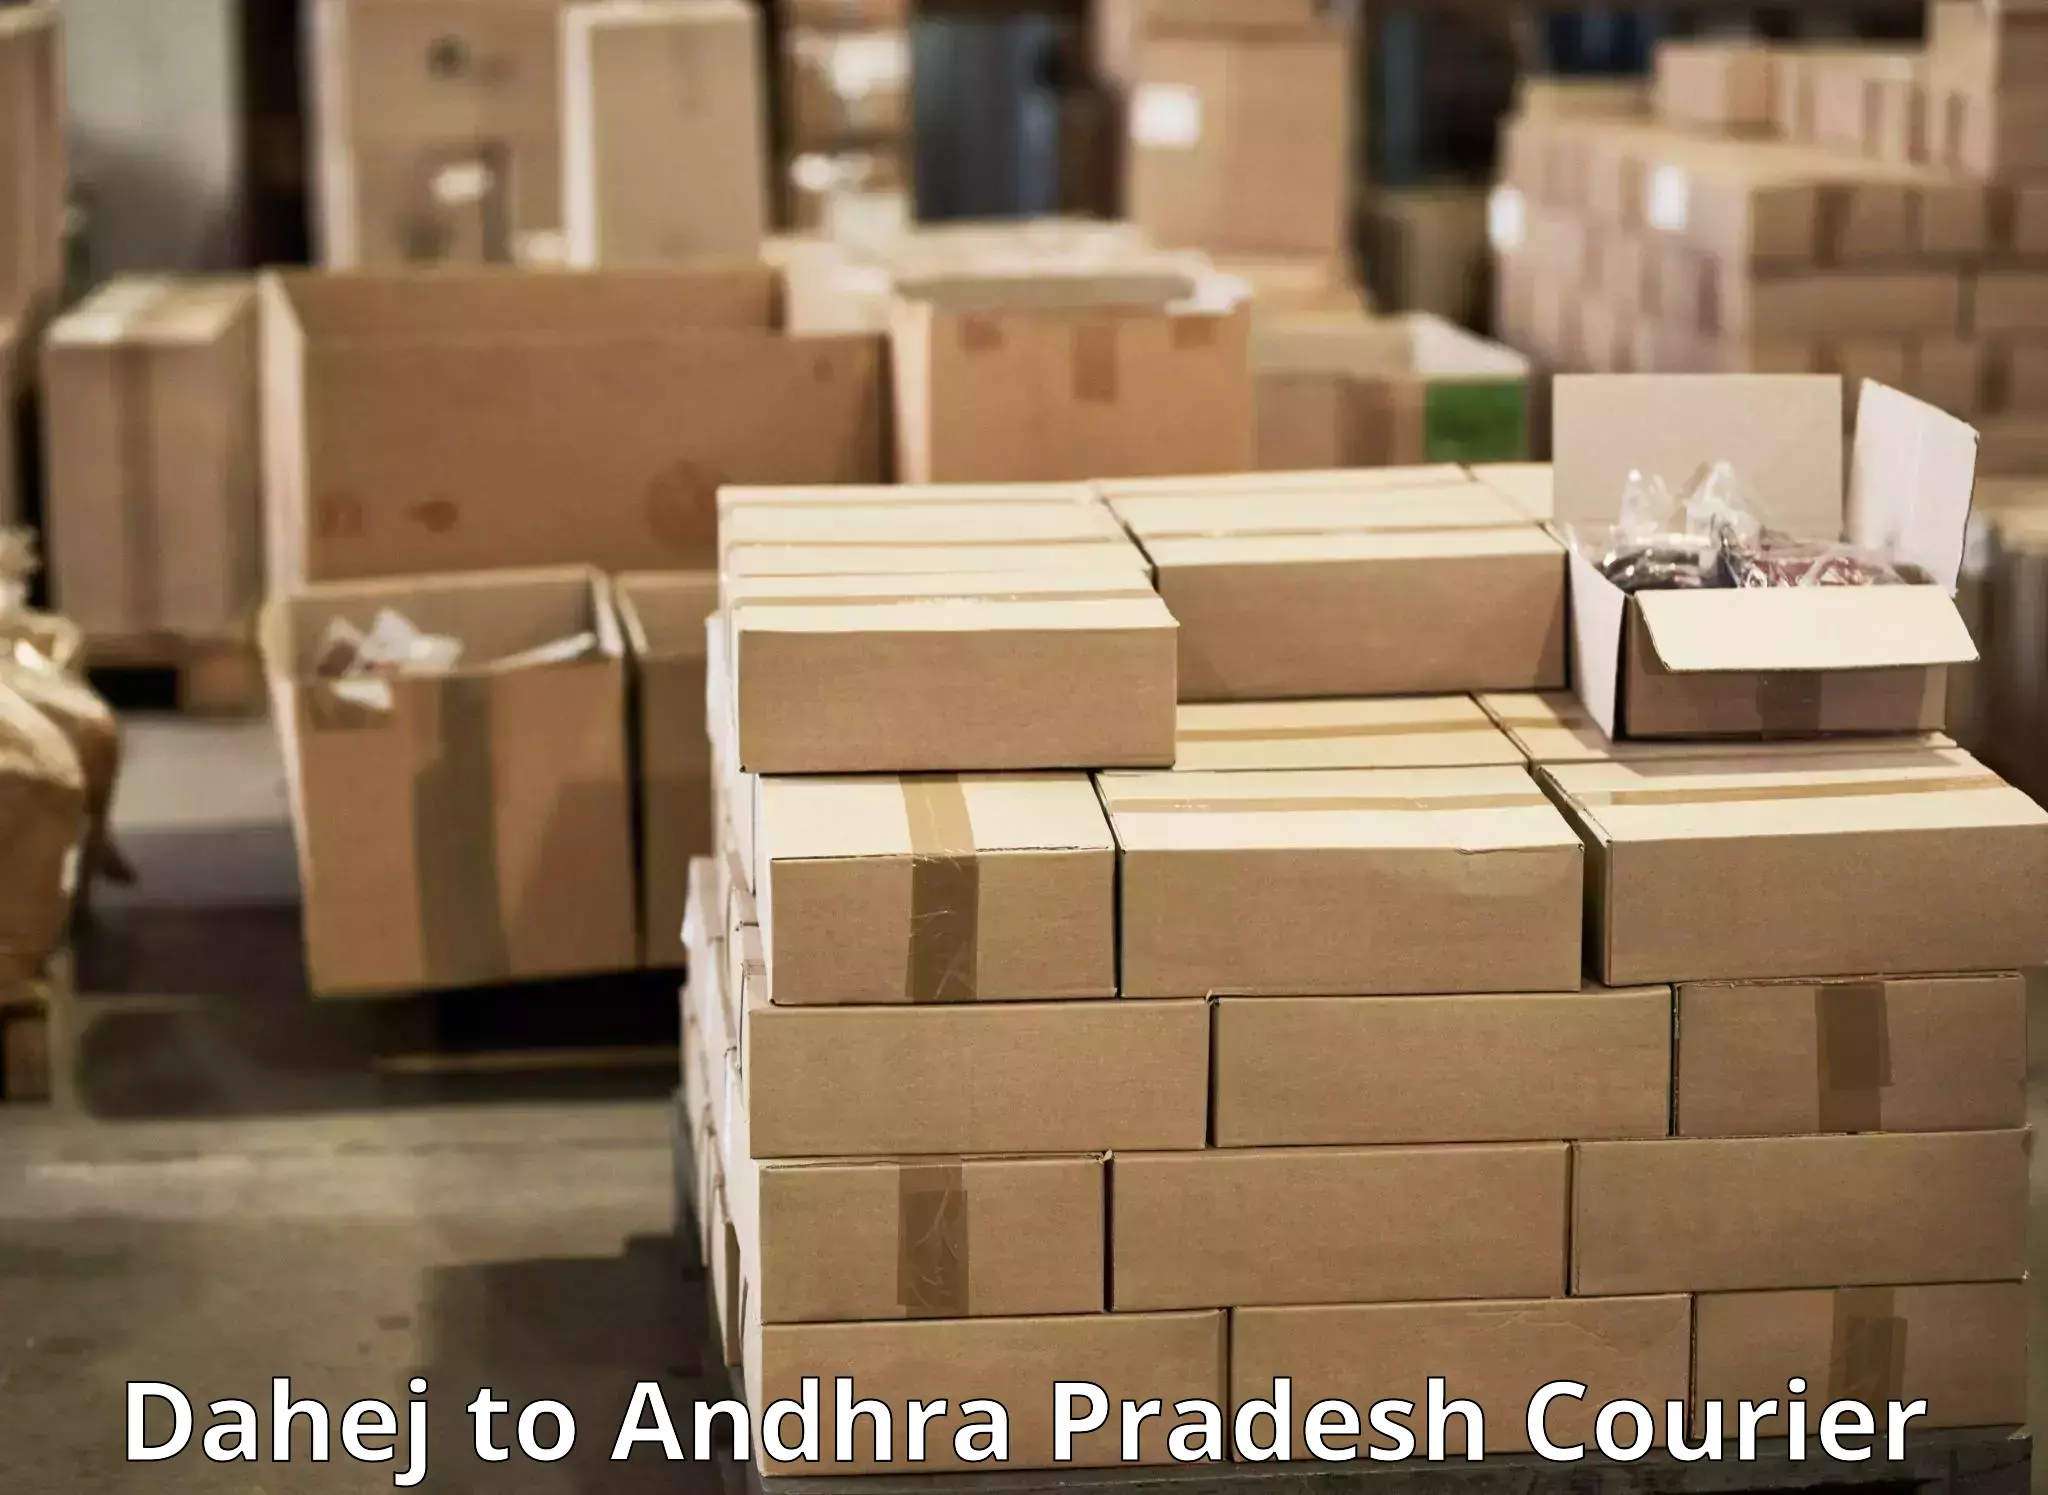 Tech-enabled shipping Dahej to Venkatagiri